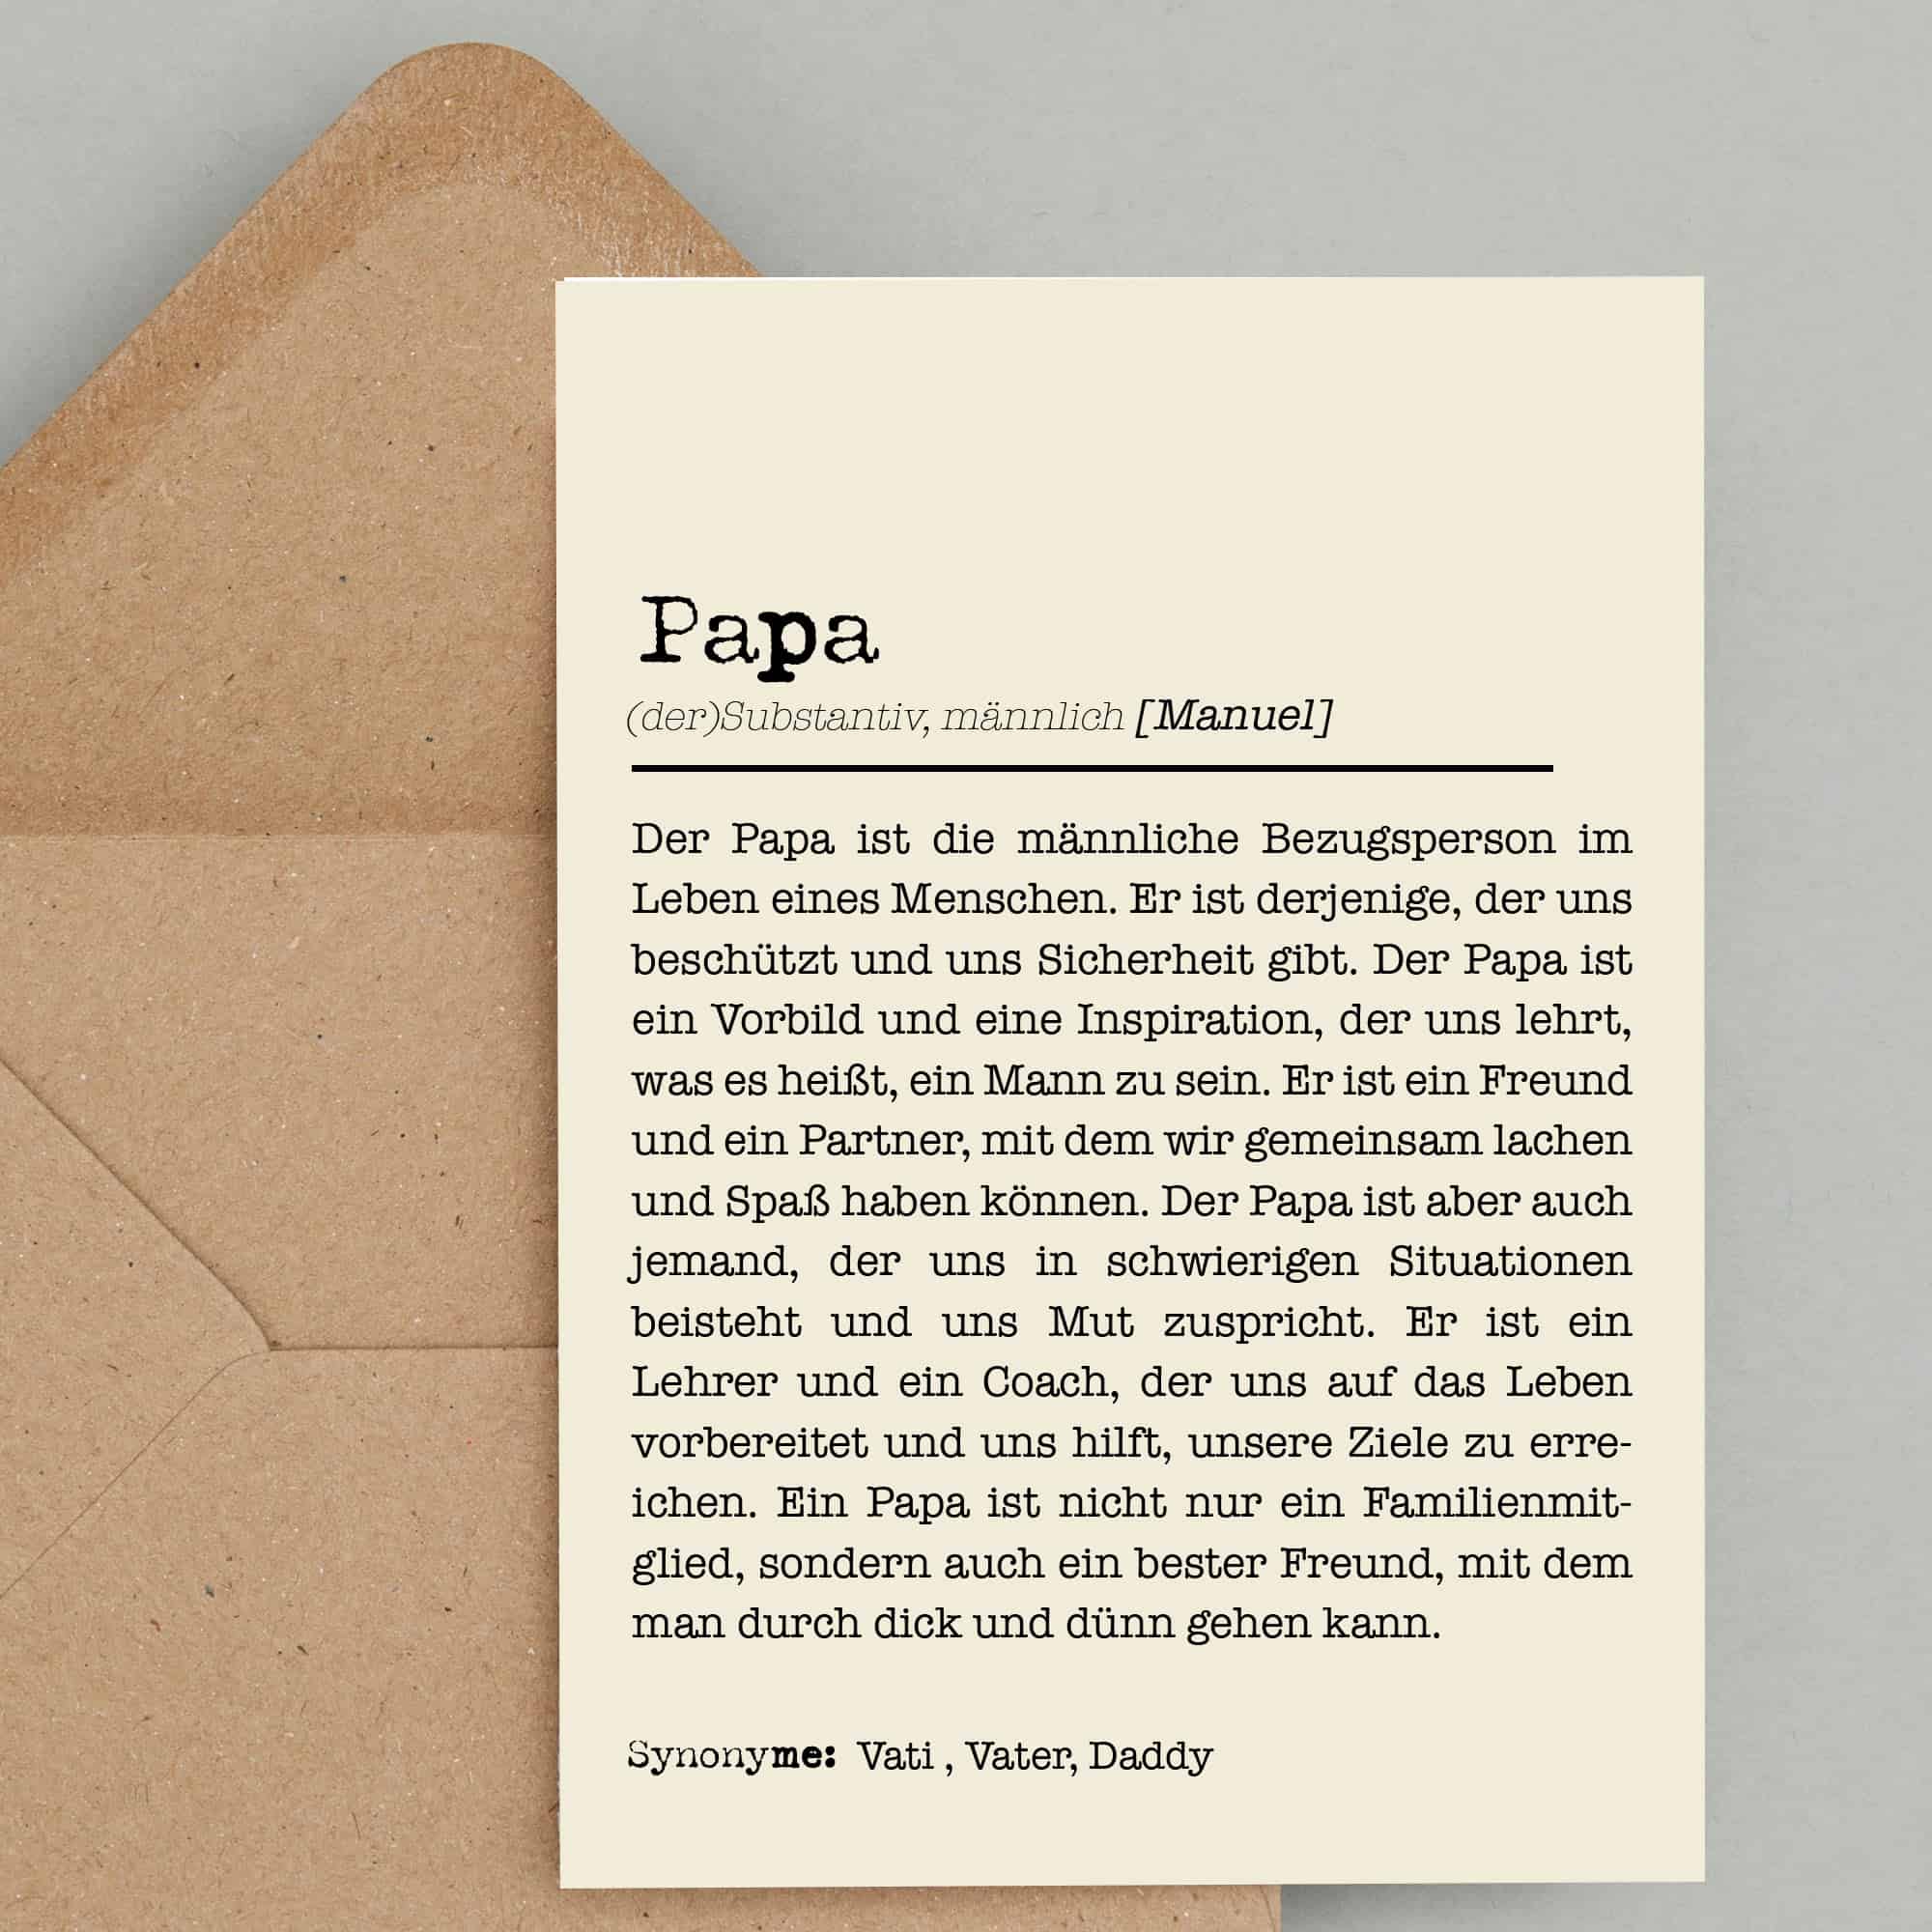 Die Karte PAPA ist eine Definitionskarte des Wortes Papa und ist gedacht als Vatertagskarte oder Geburtstagskarte für Deinen Dad